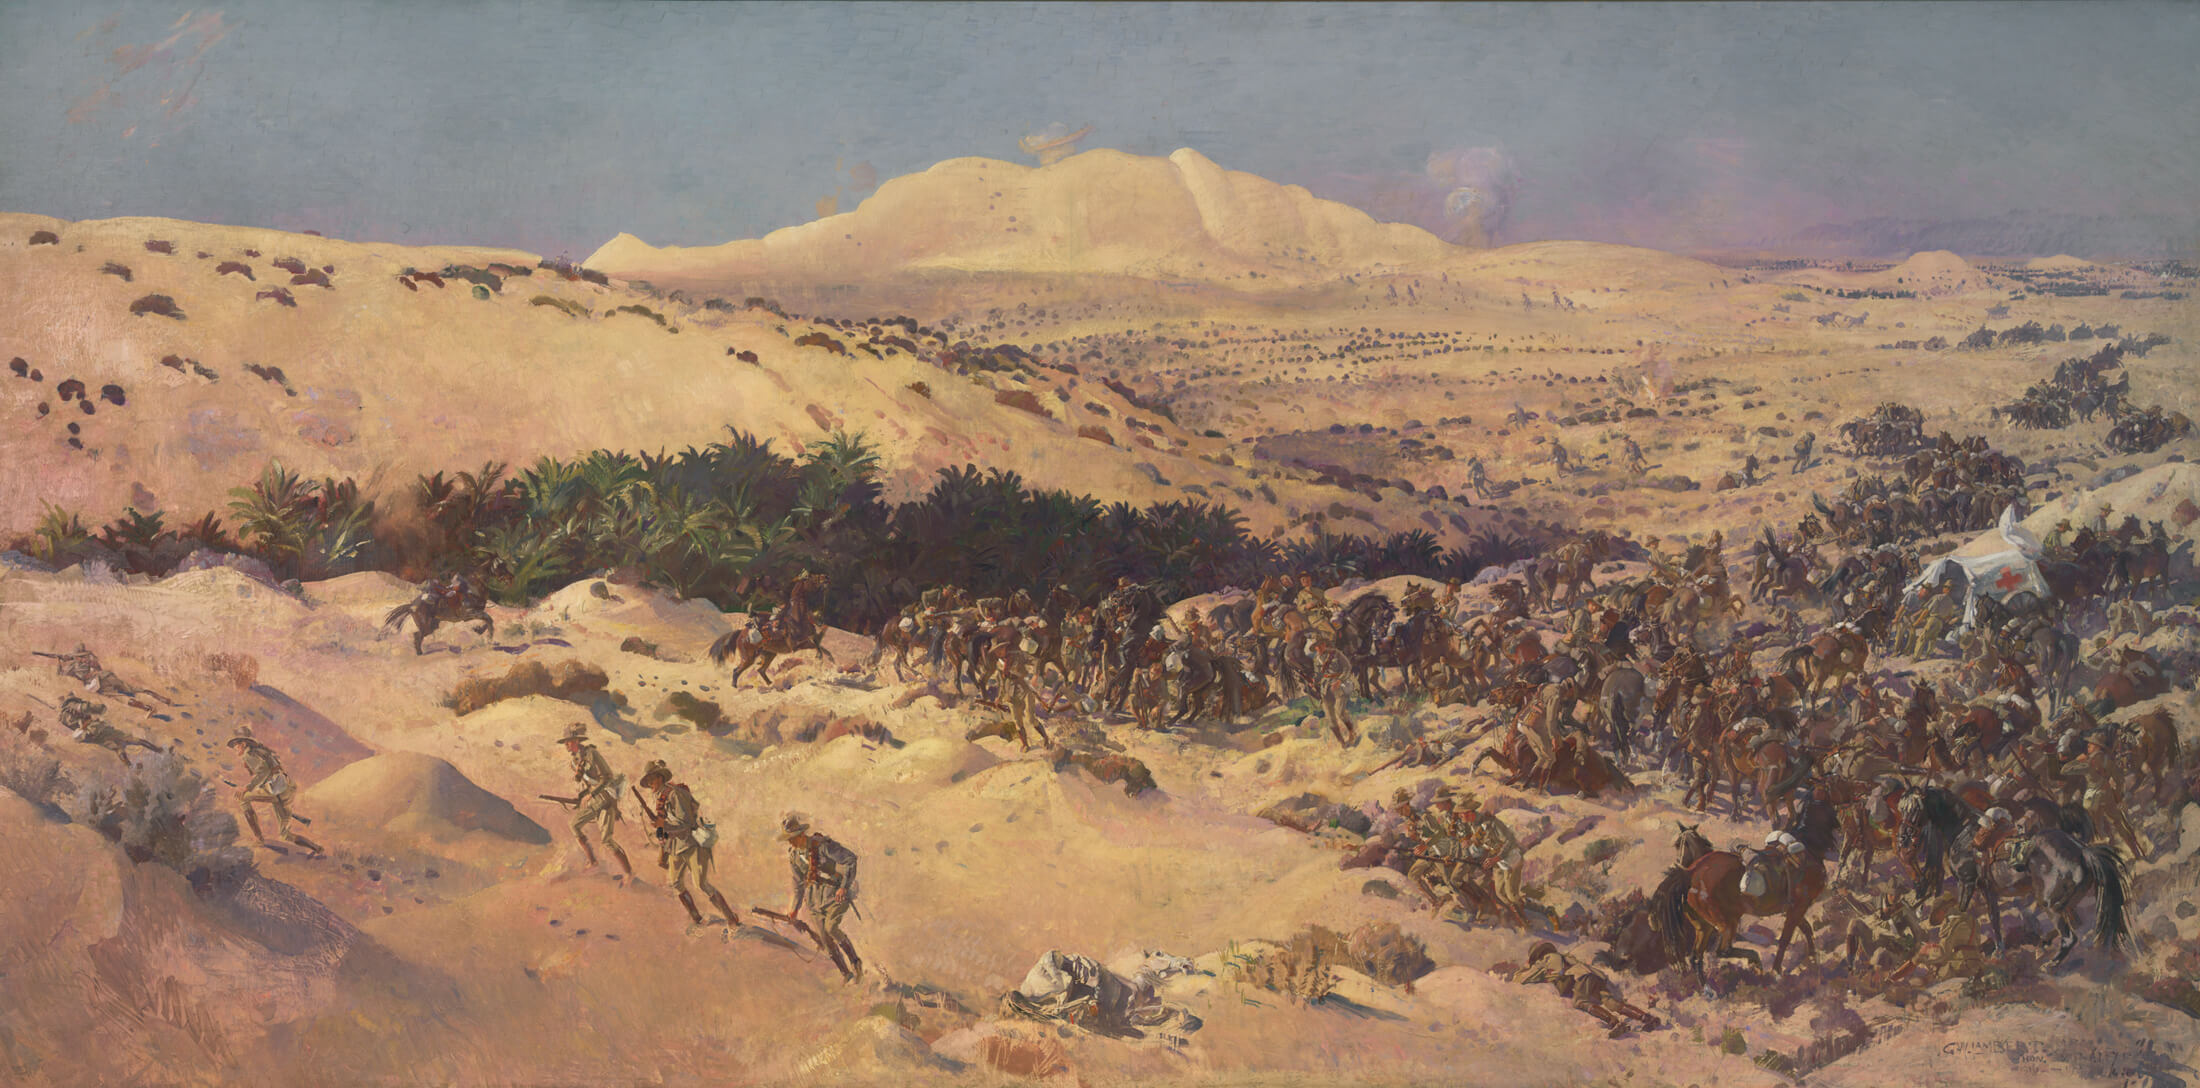 3-5 août 1916, la bataille de Romani, tournant de la guerre dans le Sinaï